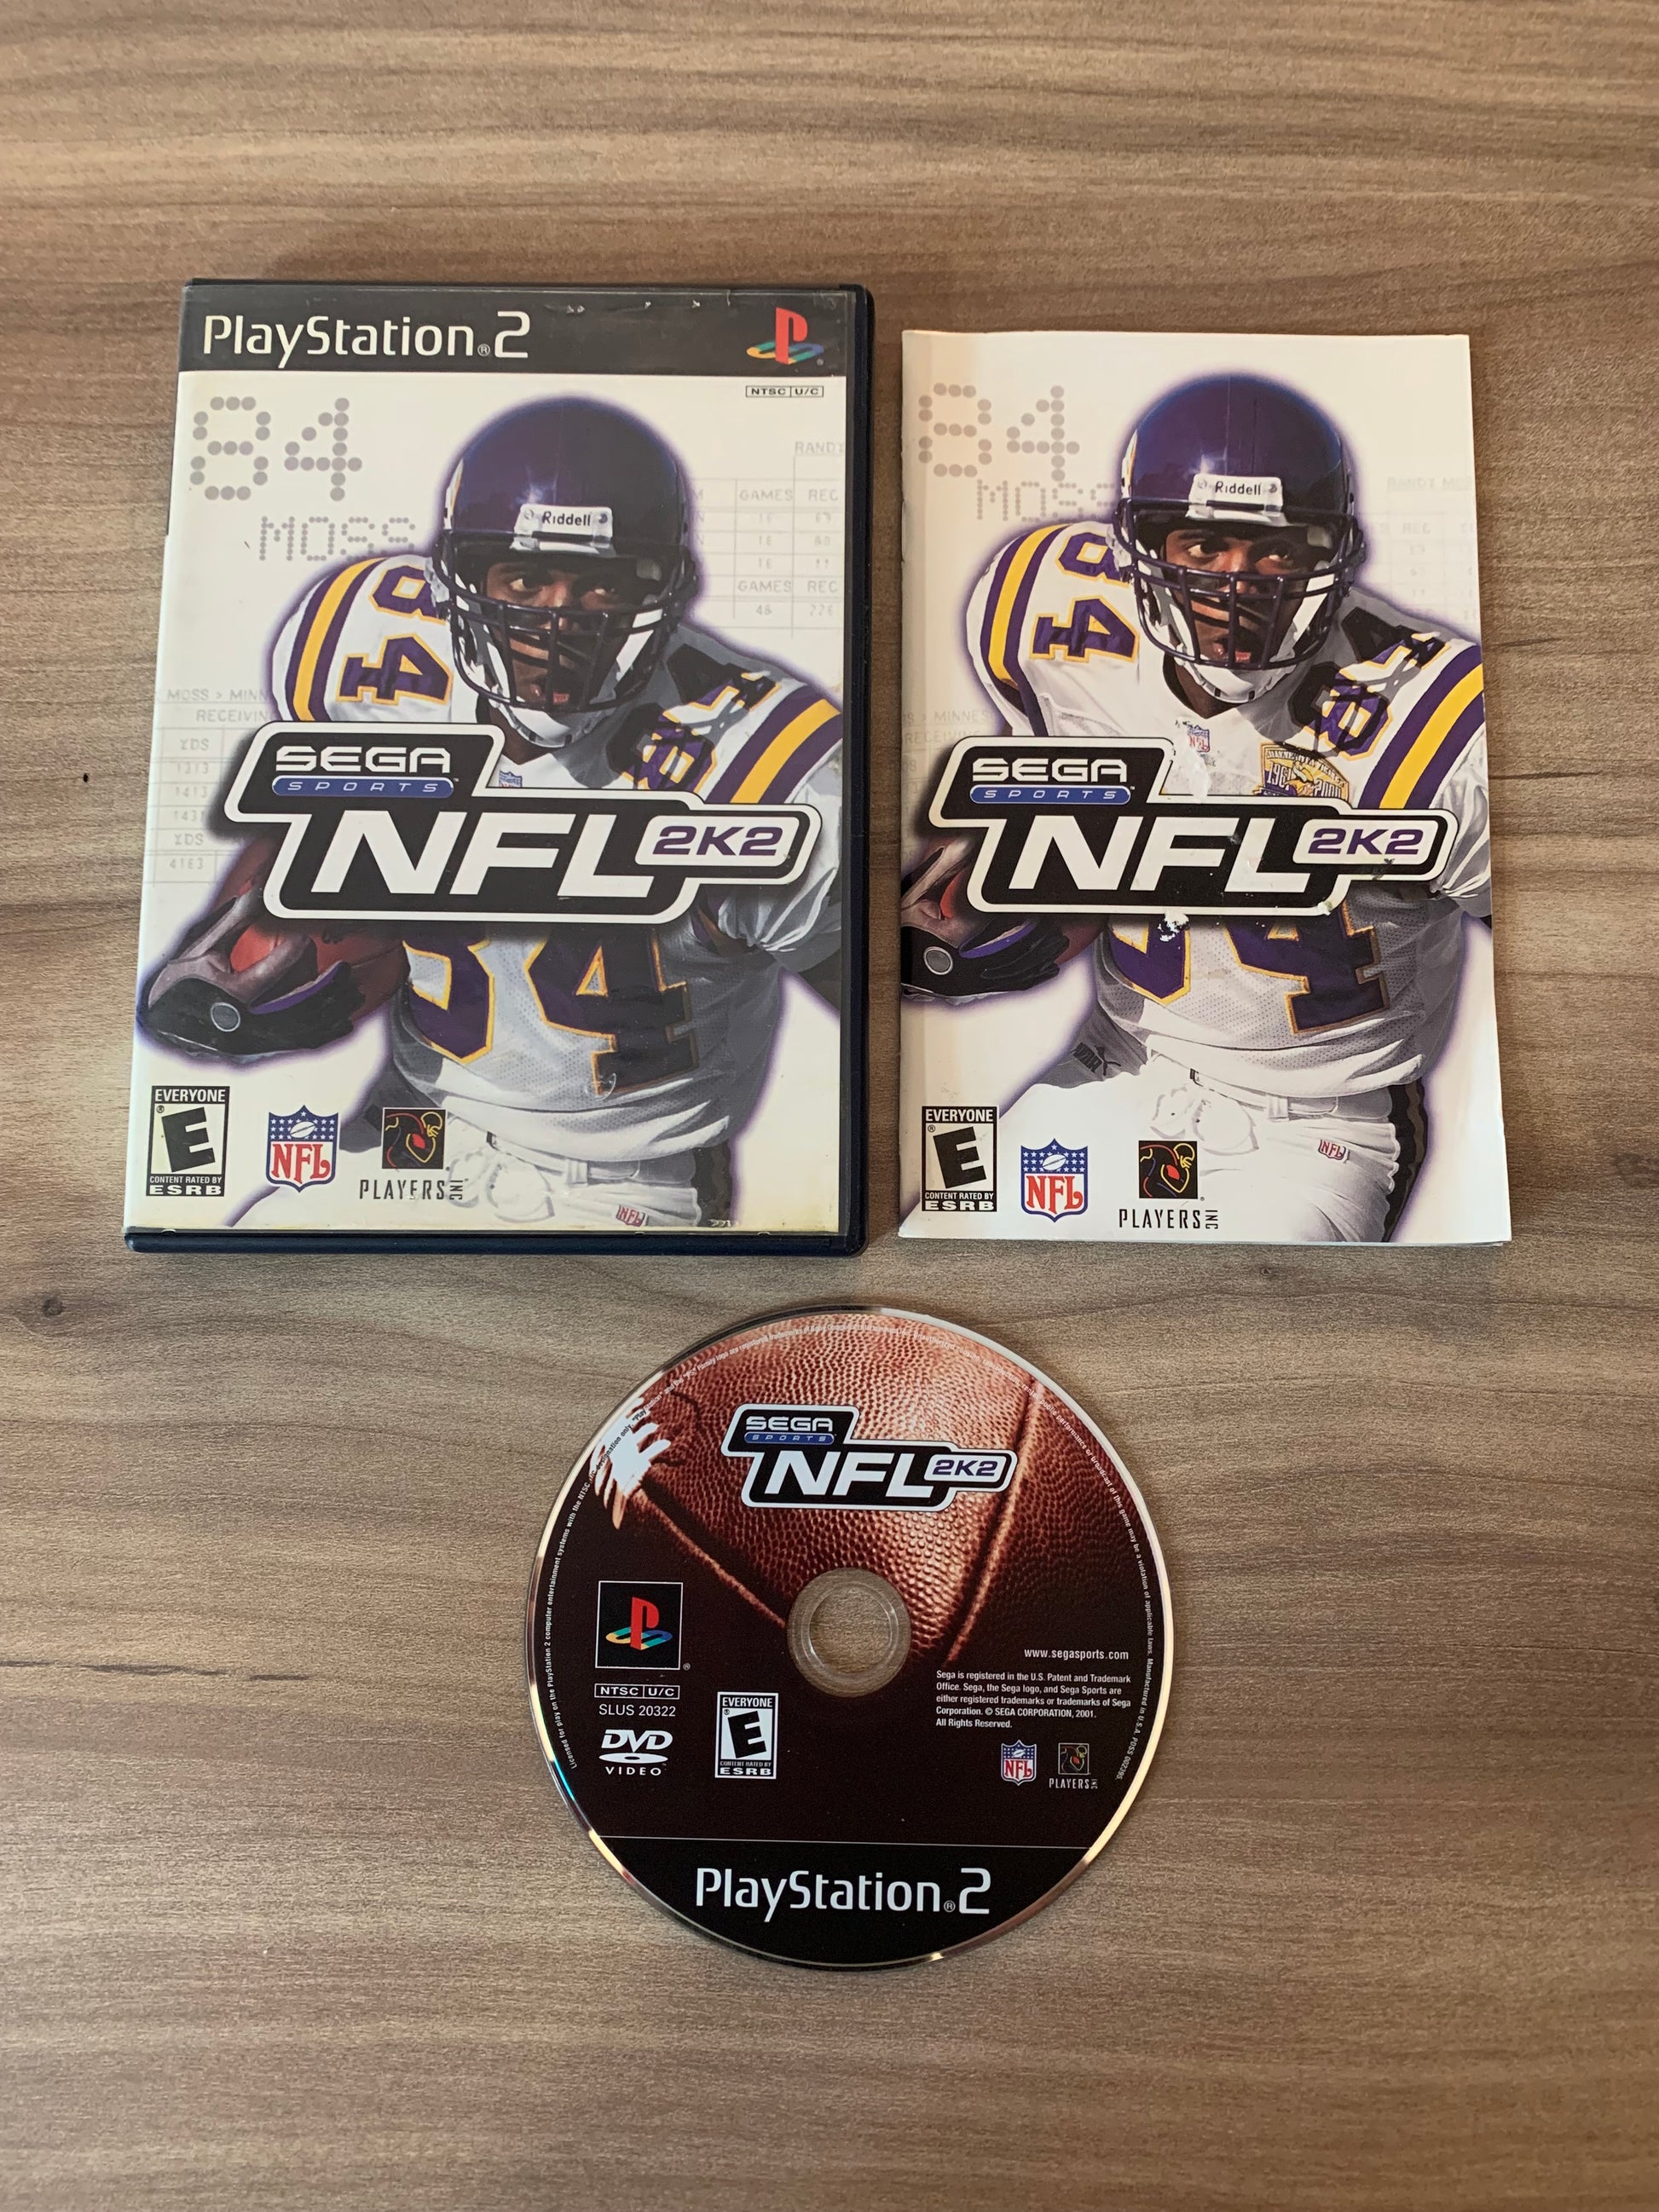 PiXEL-RETRO.COM : SONY PLAYSTATION 2 (PS2) COMPLET CIB BOX MANUAL GAME NTSC NFL 2K2